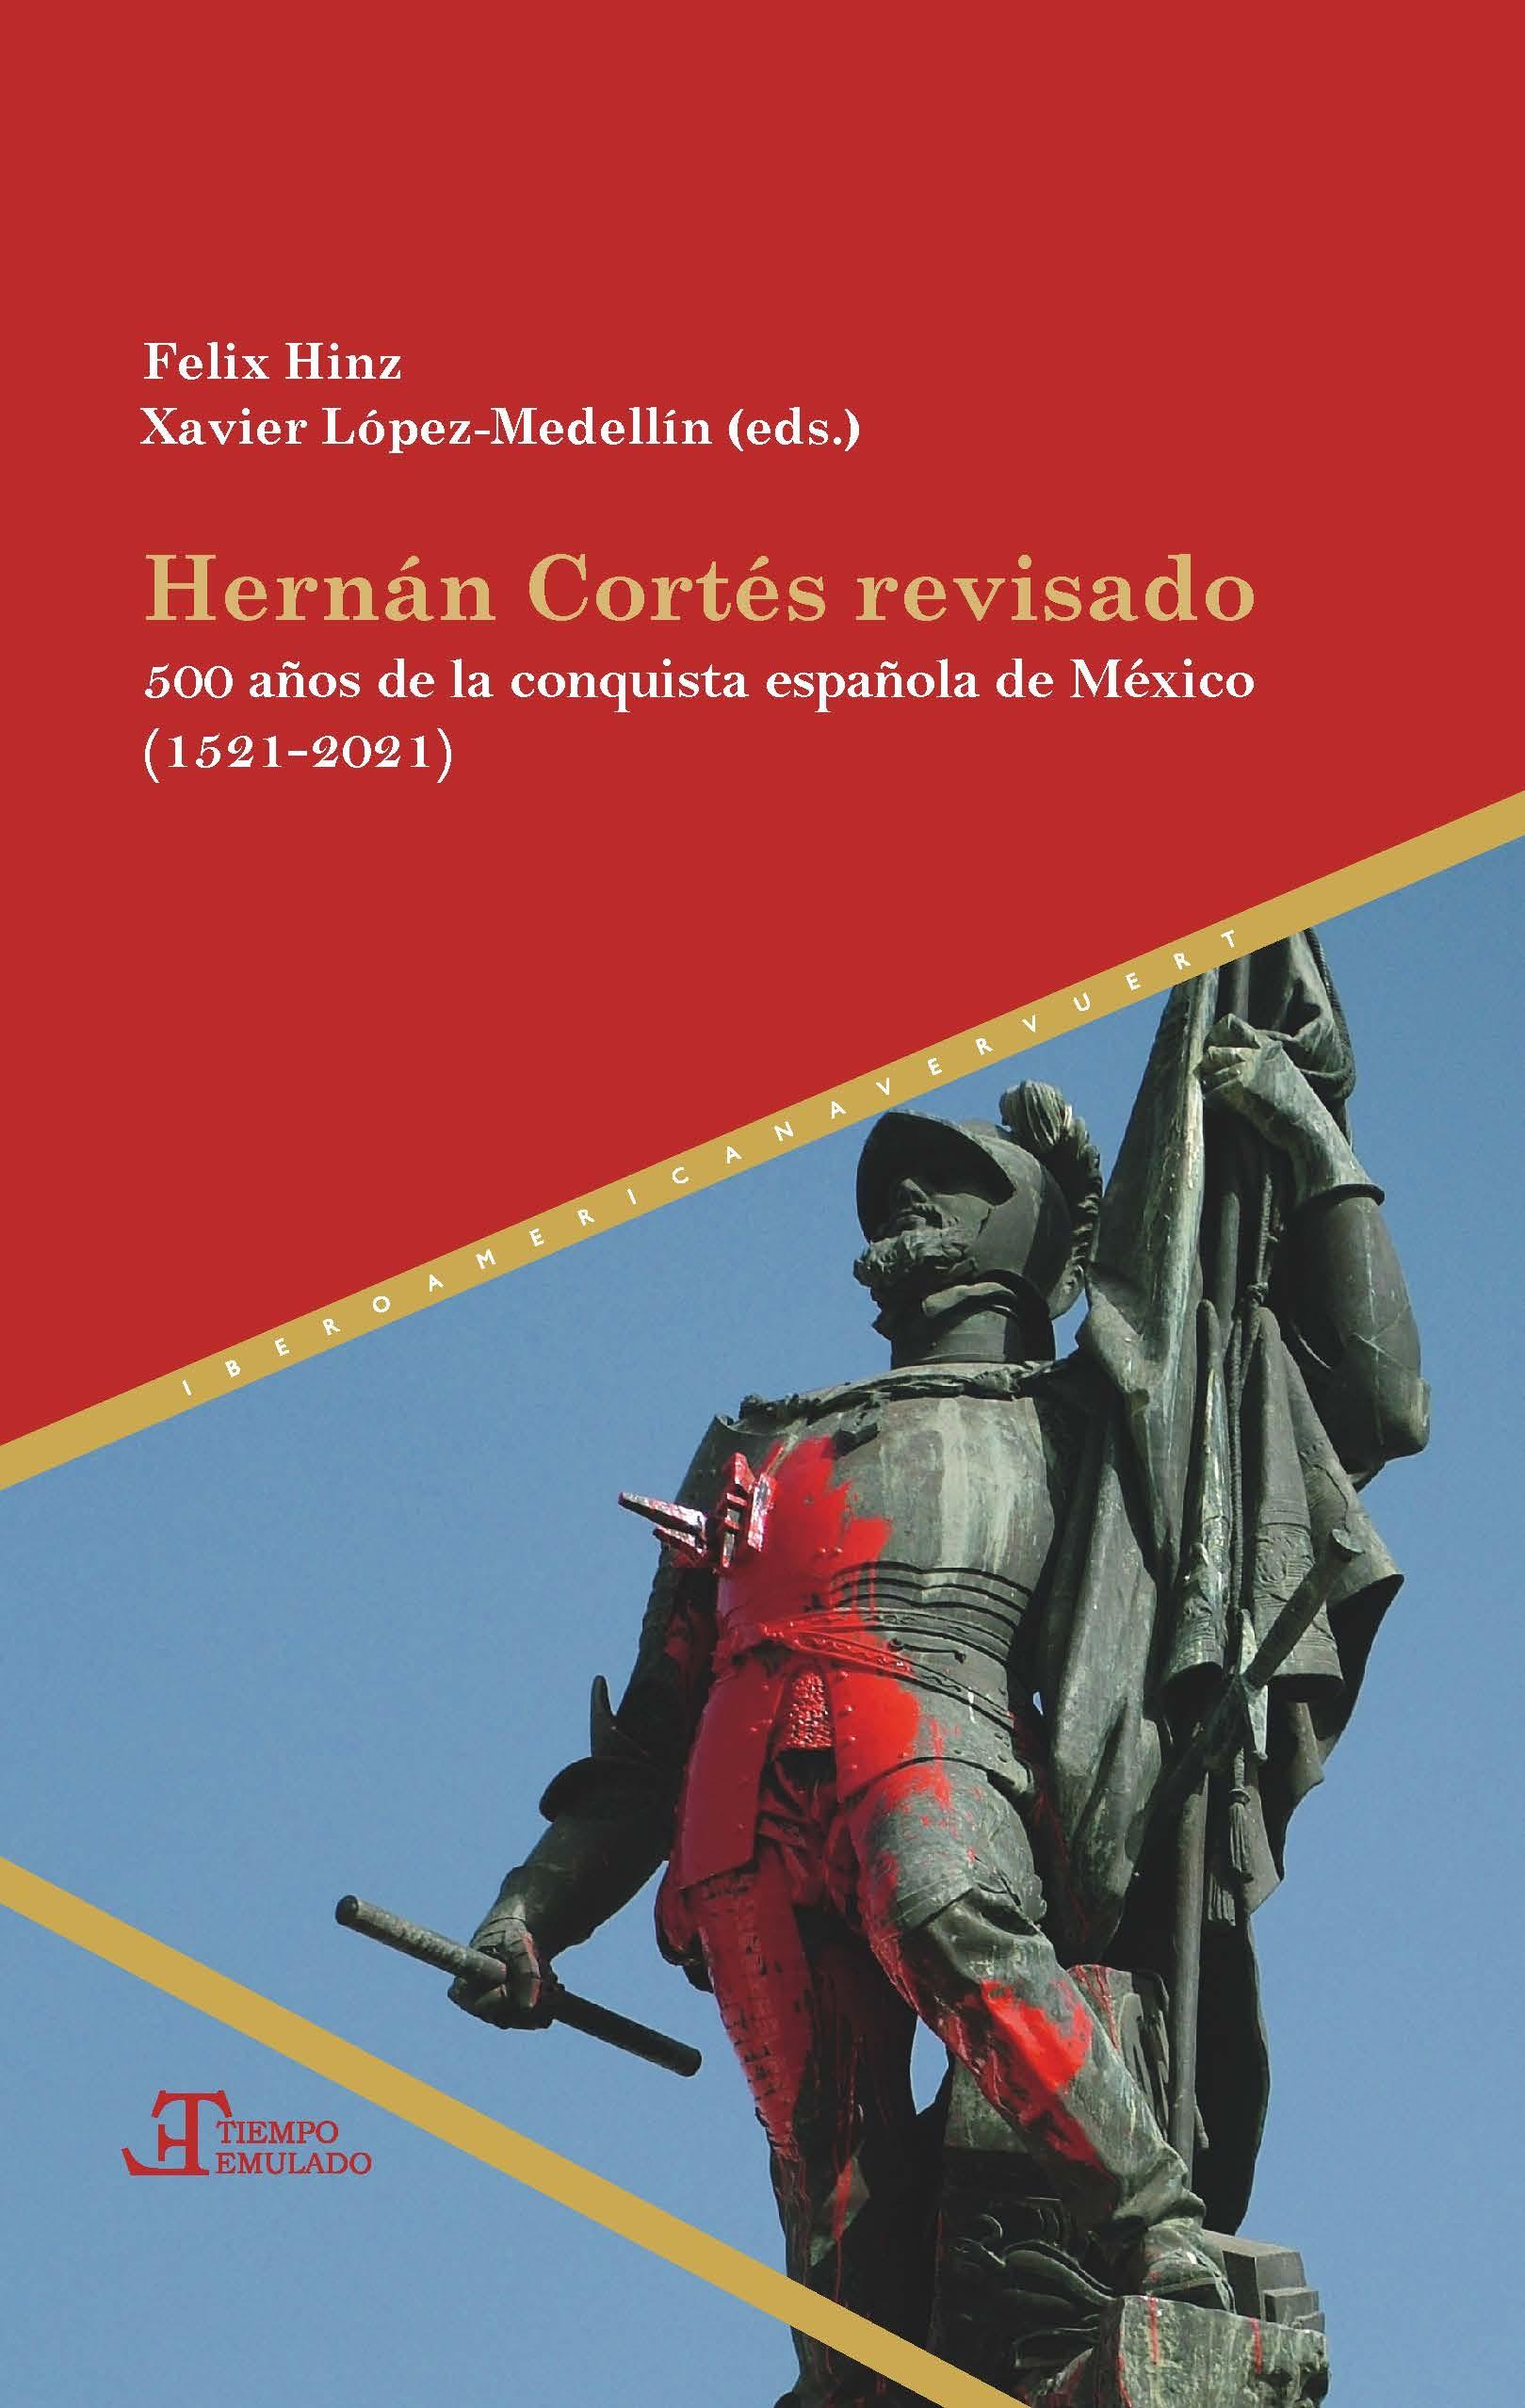 Hernán Cortés revisado "500 años de la conquista española de México (1521-2021)". 